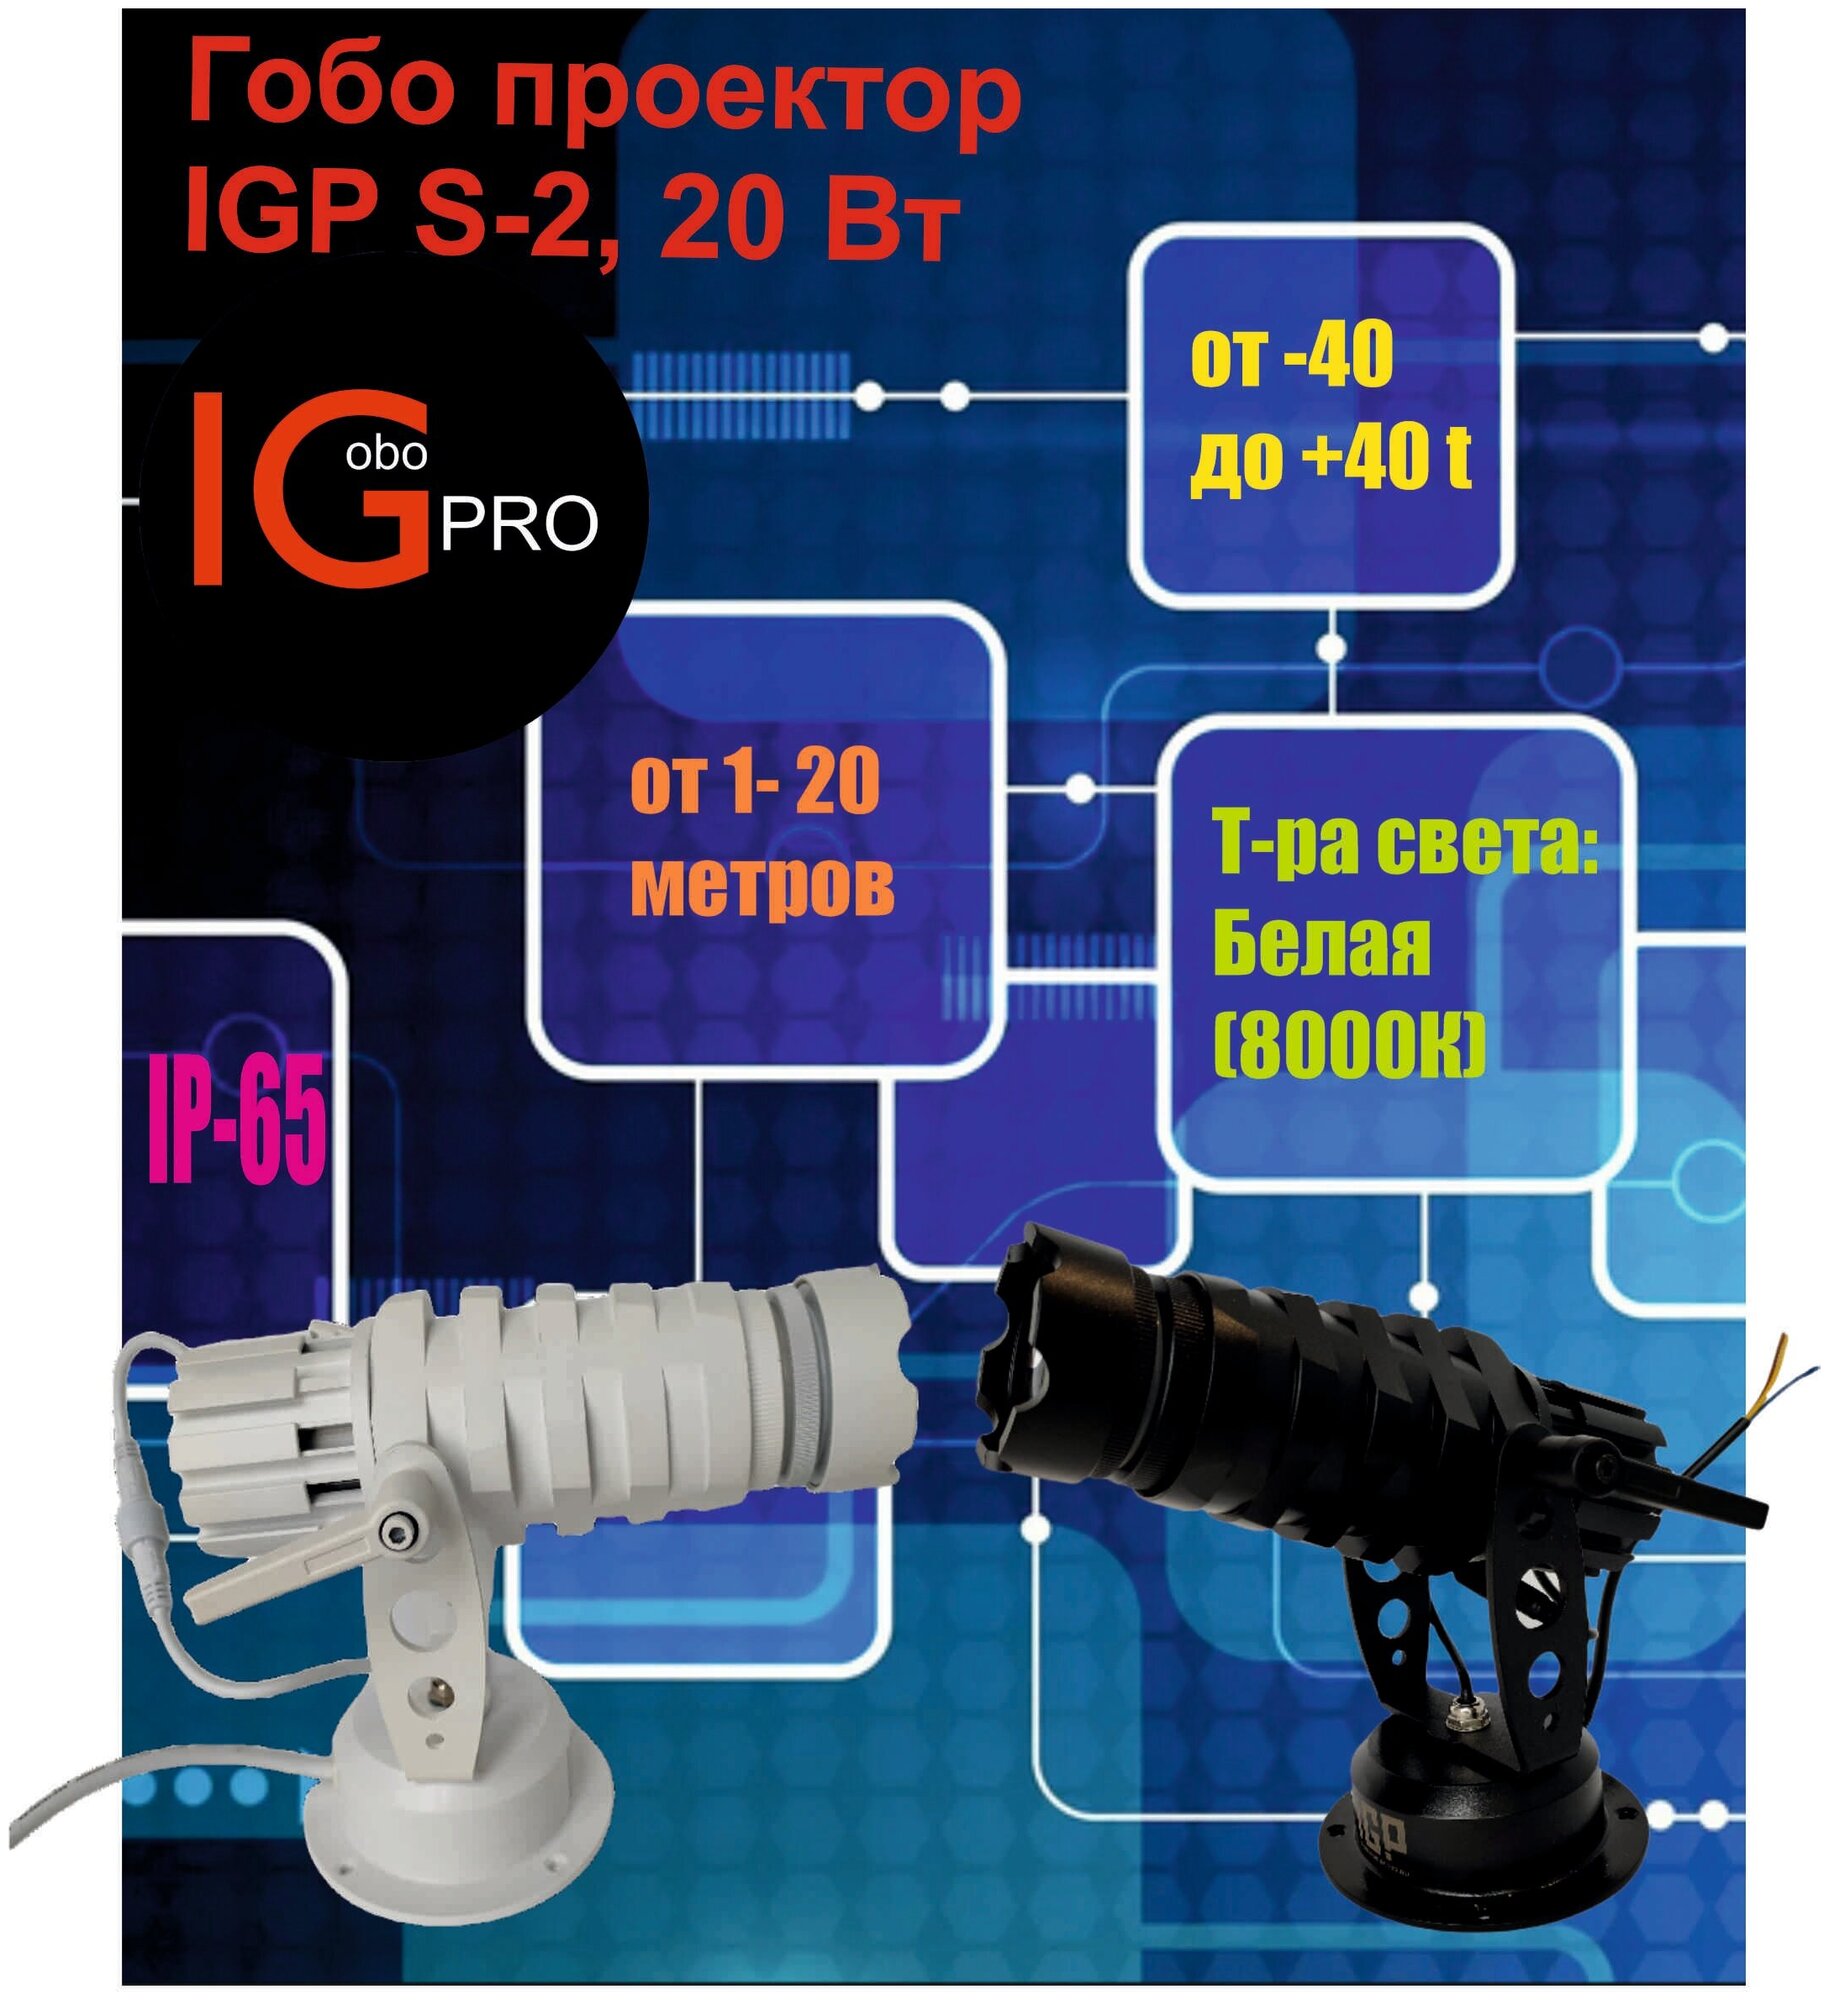 Гобо проектор IGP S2